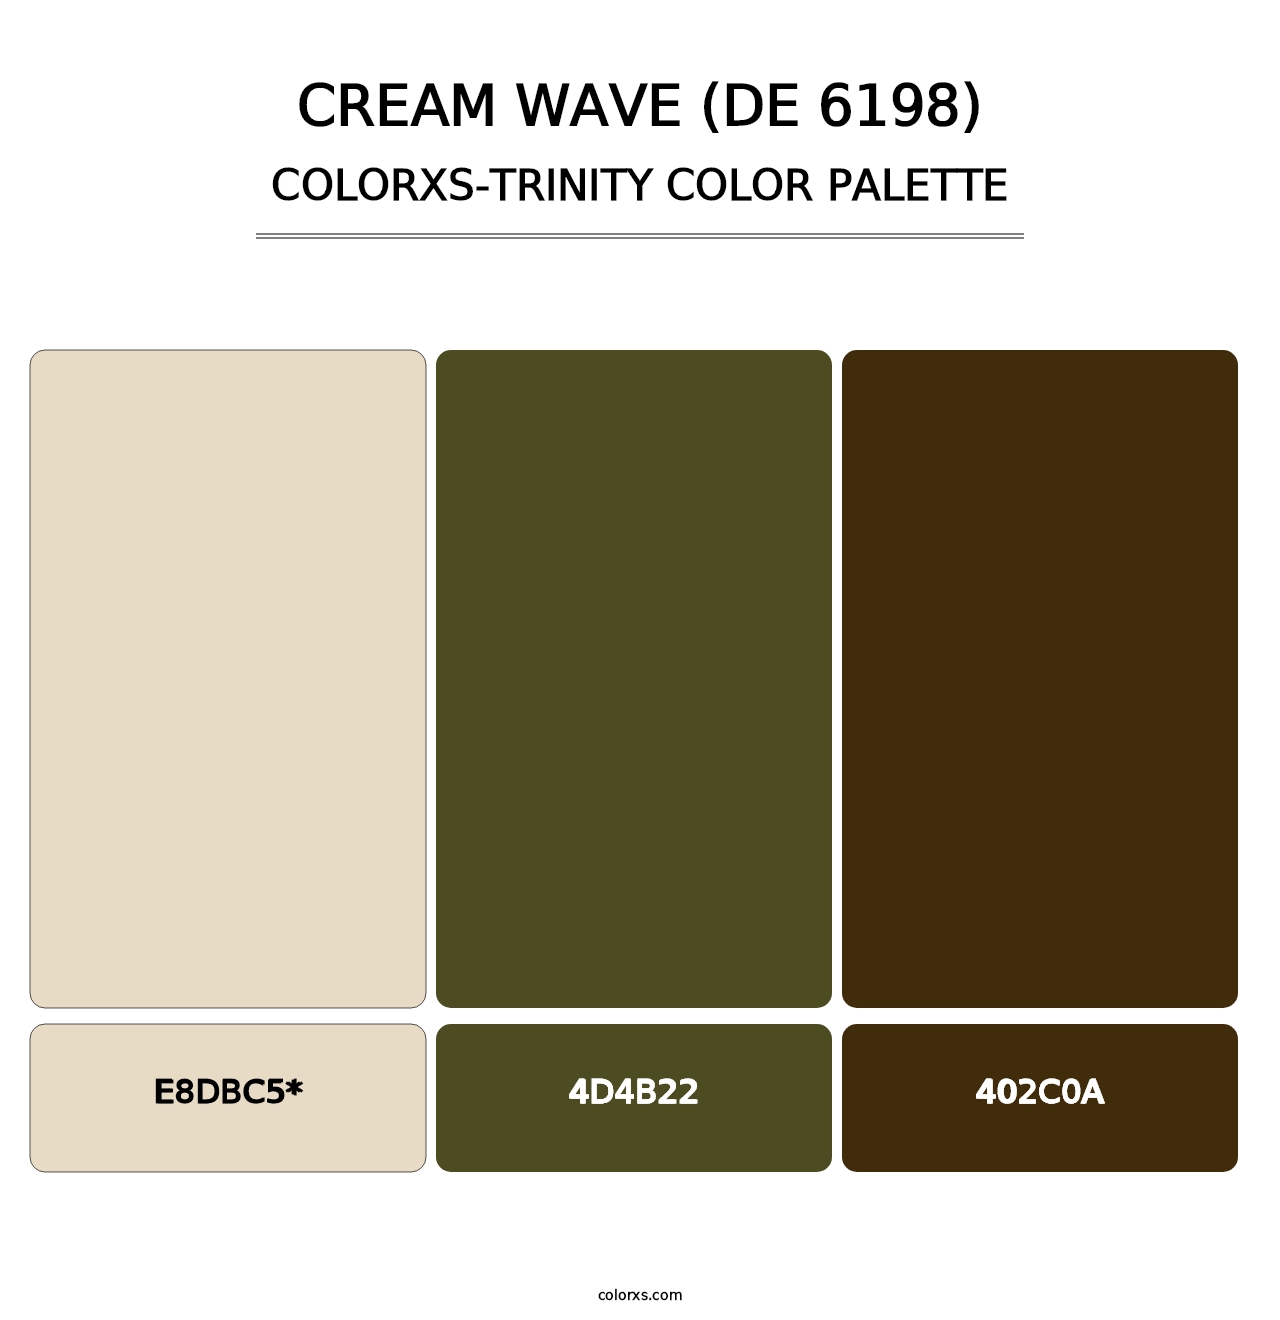 Cream Wave (DE 6198) - Colorxs Trinity Palette